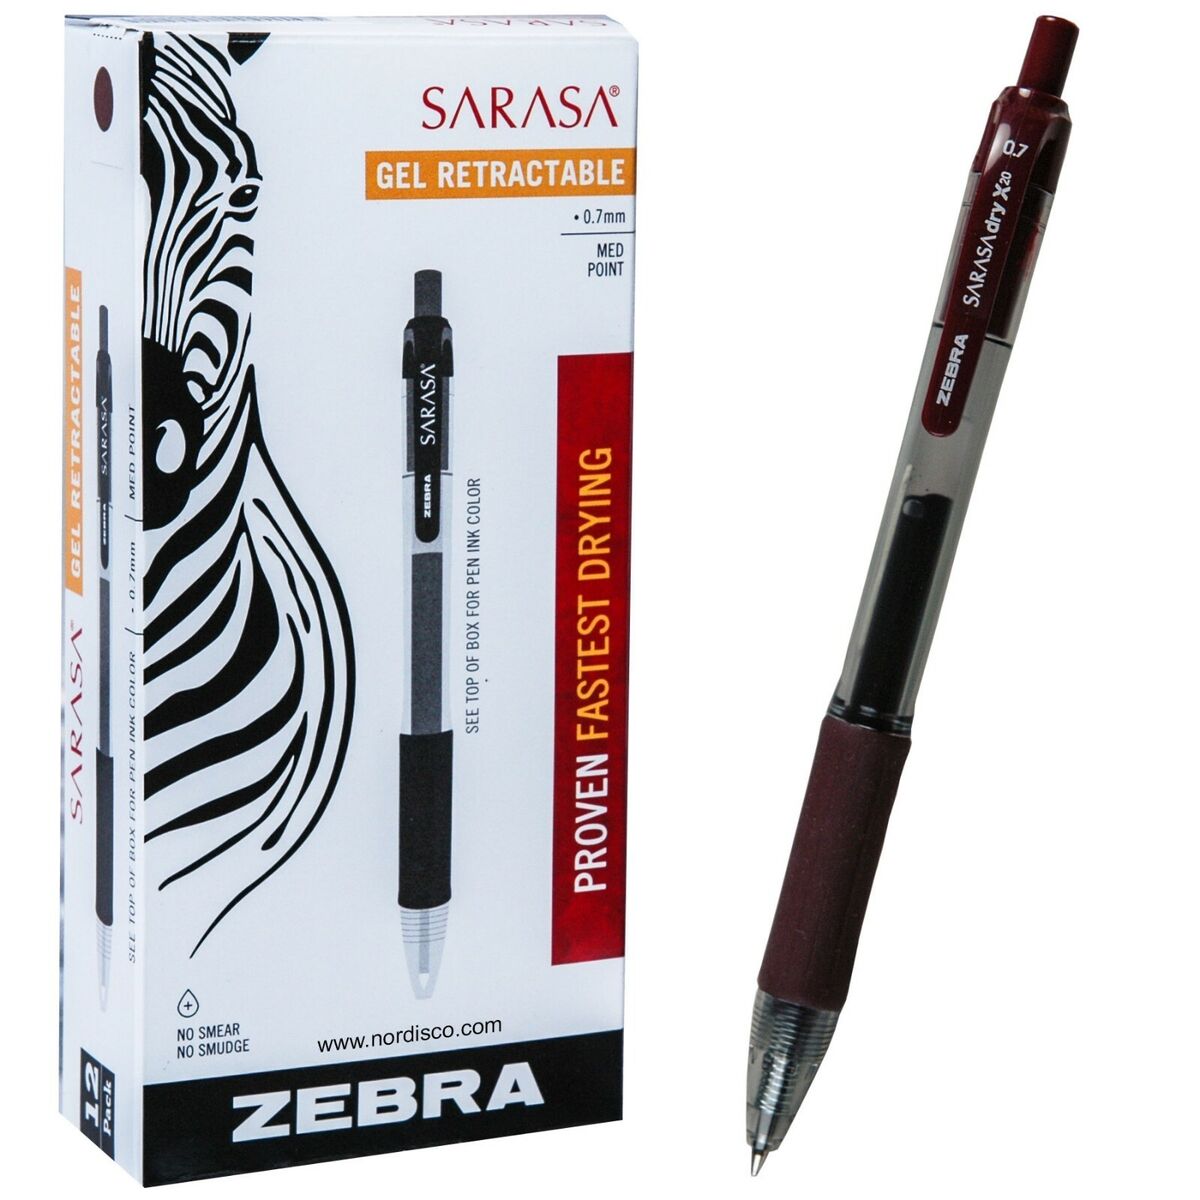 Zebra Pen Sarasa X20 Retractable Gel Ink Pens, Medium Point 0.7mm, Black  Rapid Dry Ink, 4 Pack (Packaging may vary)